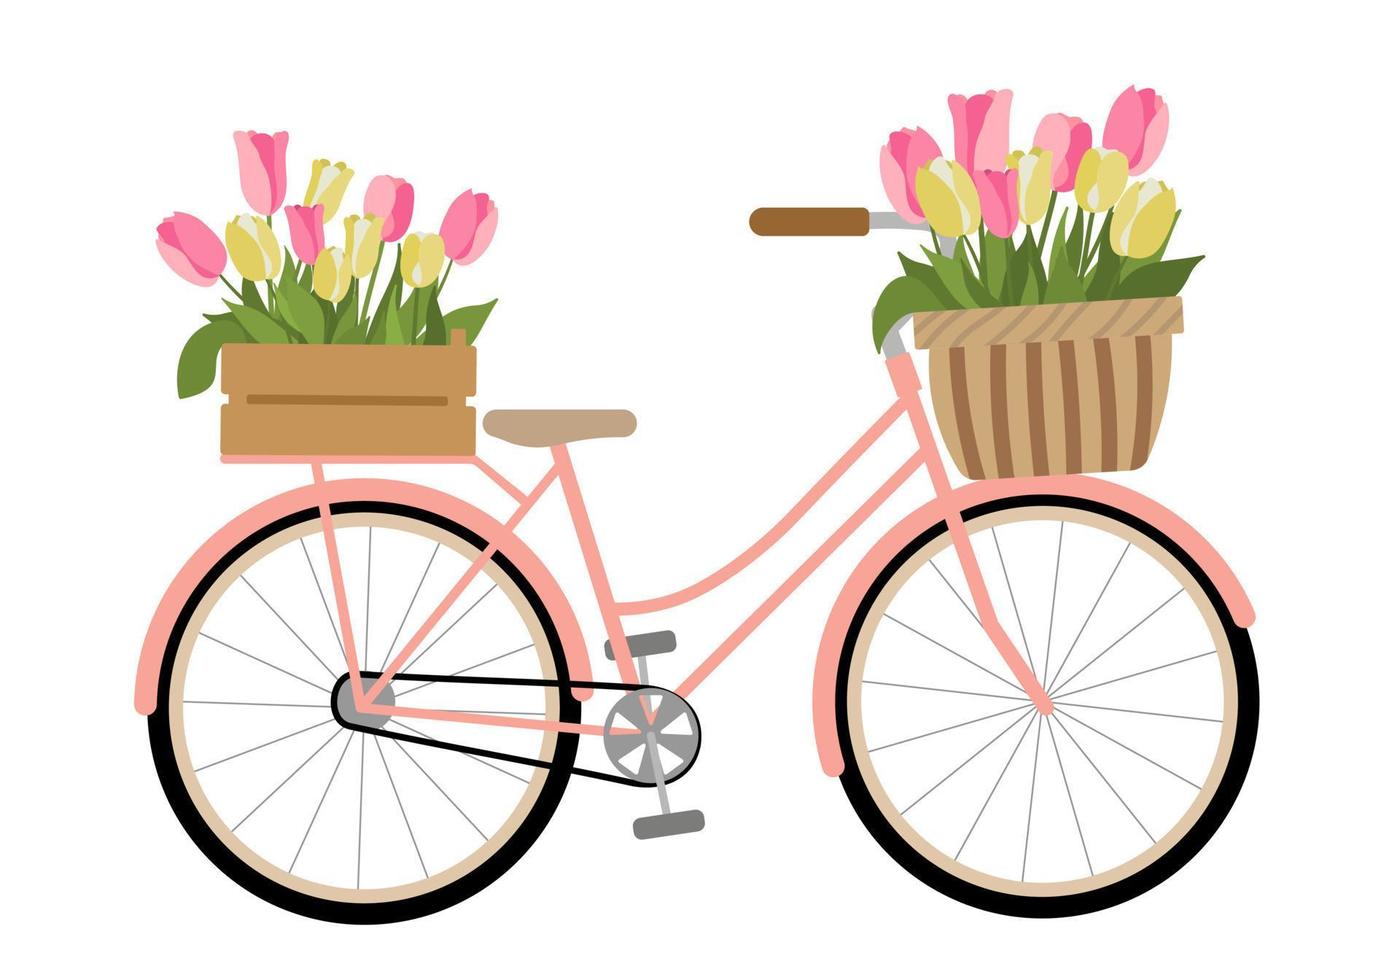 leuke handgetekende fiets met krat en mand. geïsoleerd op een witte achtergrond. fietsmanden met bloemen en planten. platte vectorillustratie. retro voertuig met bloemboeket. vector